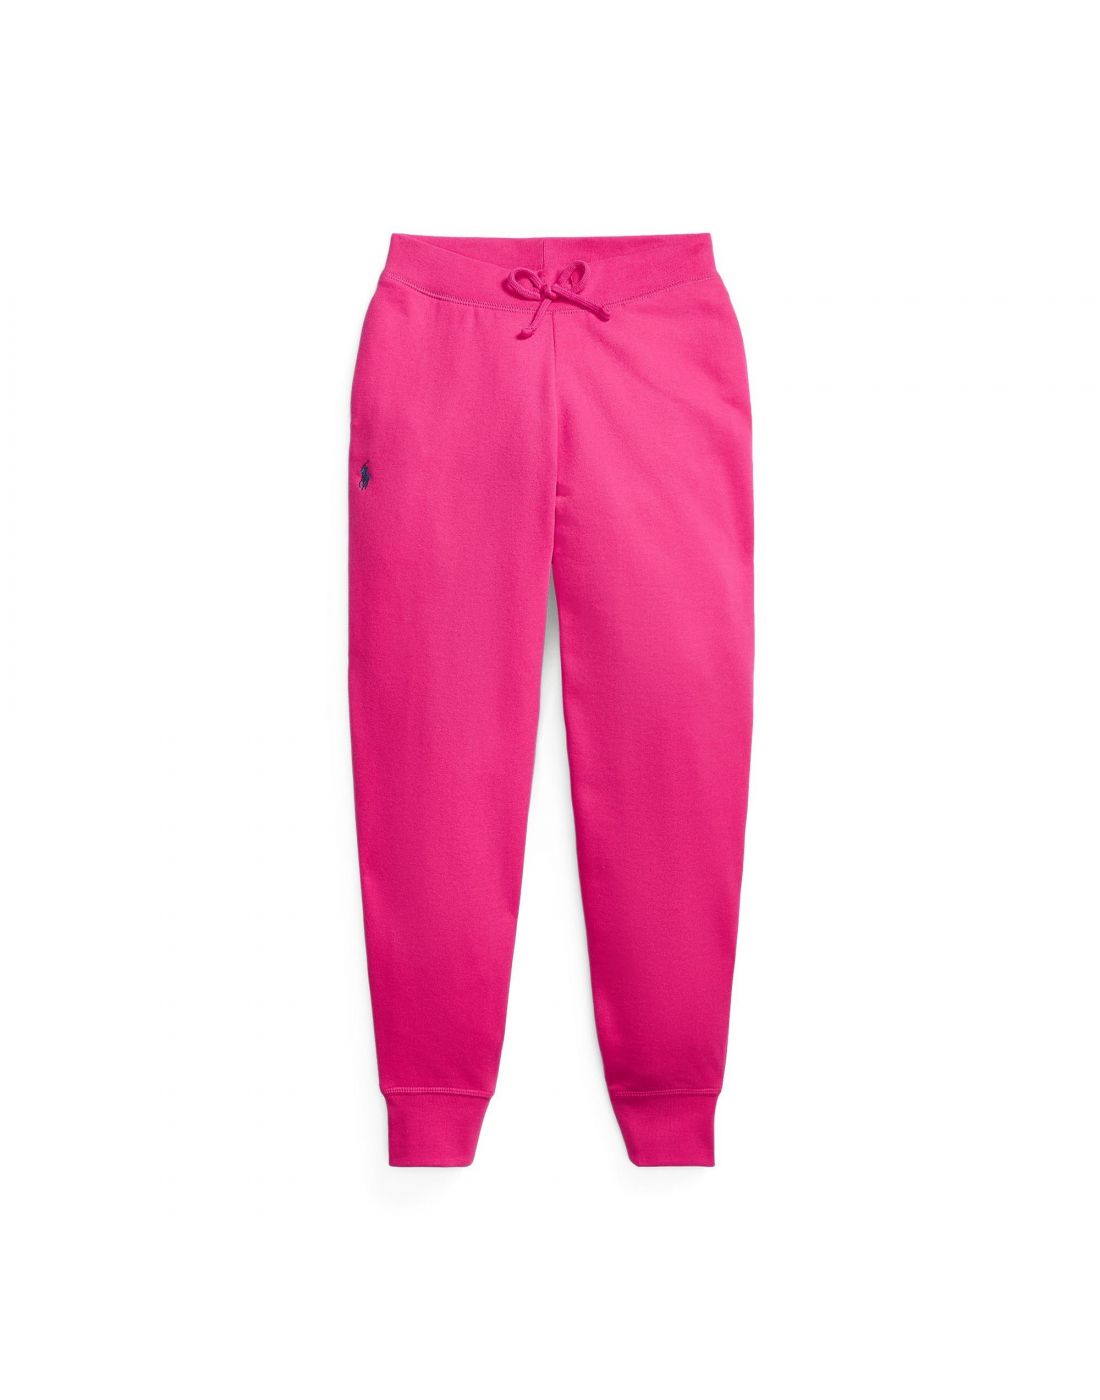 Polo Ralph Lauren - Girls Pink Cotton Logo Joggers